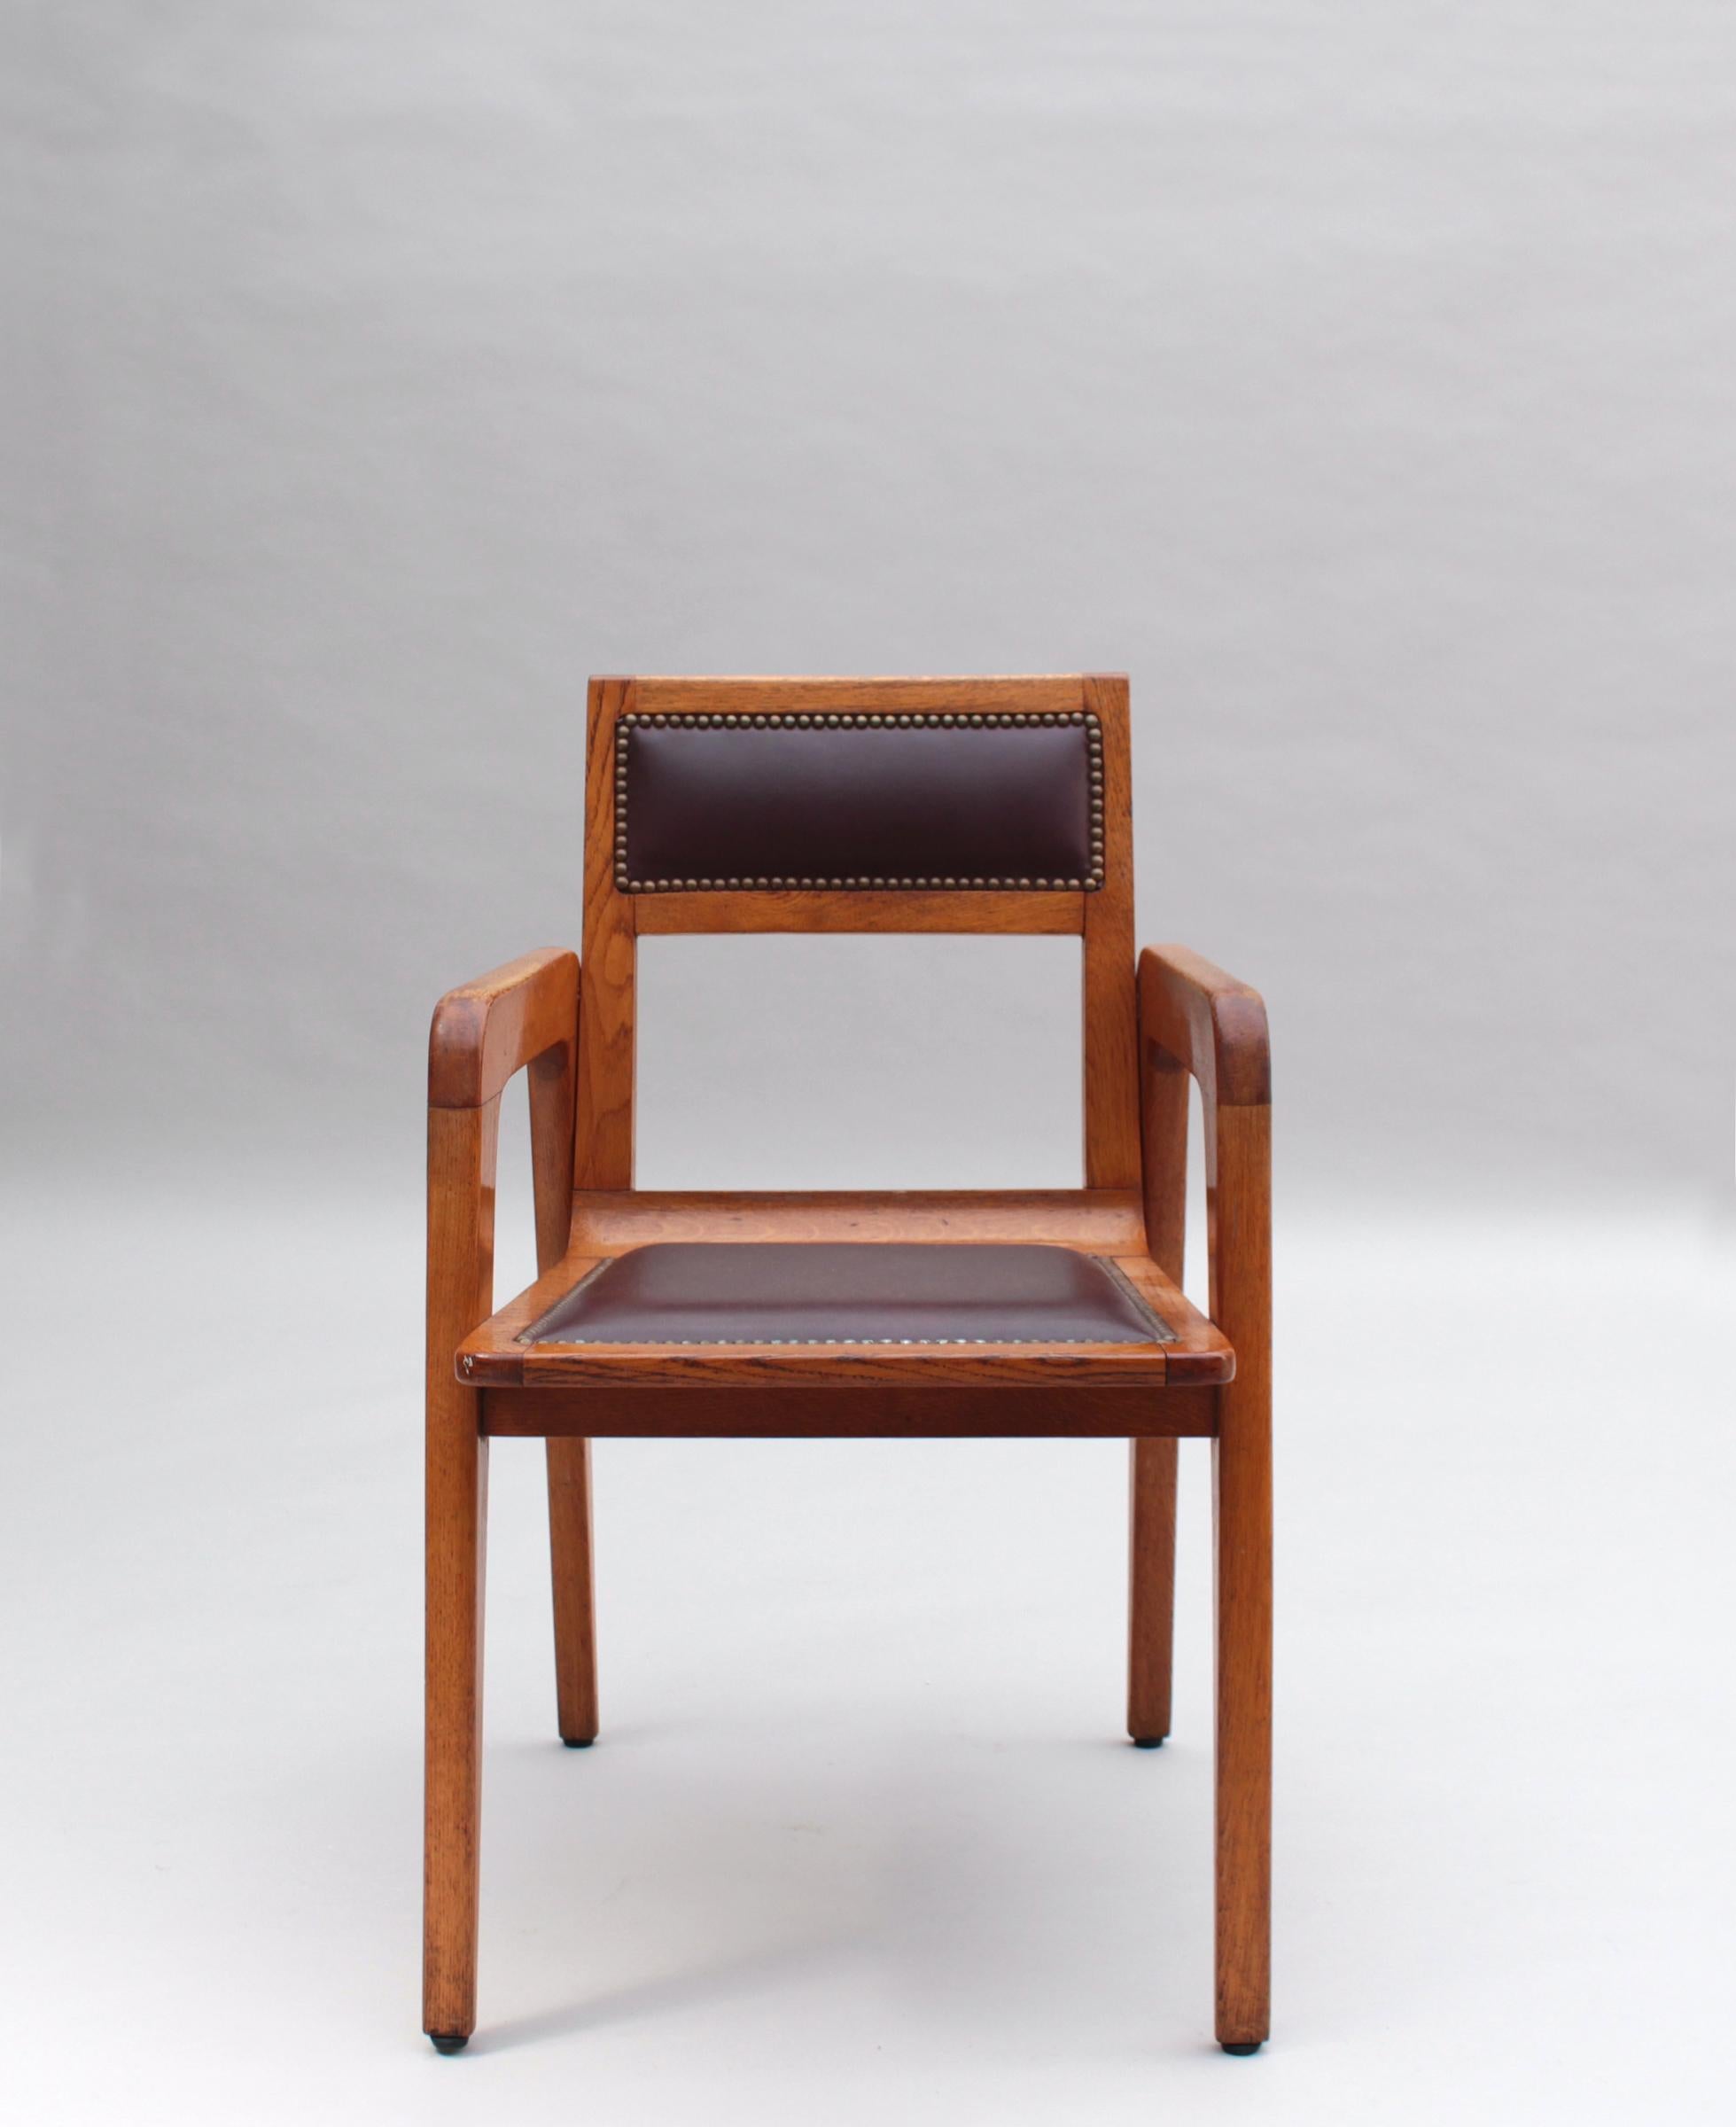 Vingt-huit fauteuils en chêne massif belge de De Coene Freres pour Knoll International LTD New-York.
A notre connaissance, ce modèle rare a été commandé pour un seul projet en Belgique.
L'une des chaises porte l'étiquette originale de Label.

Le